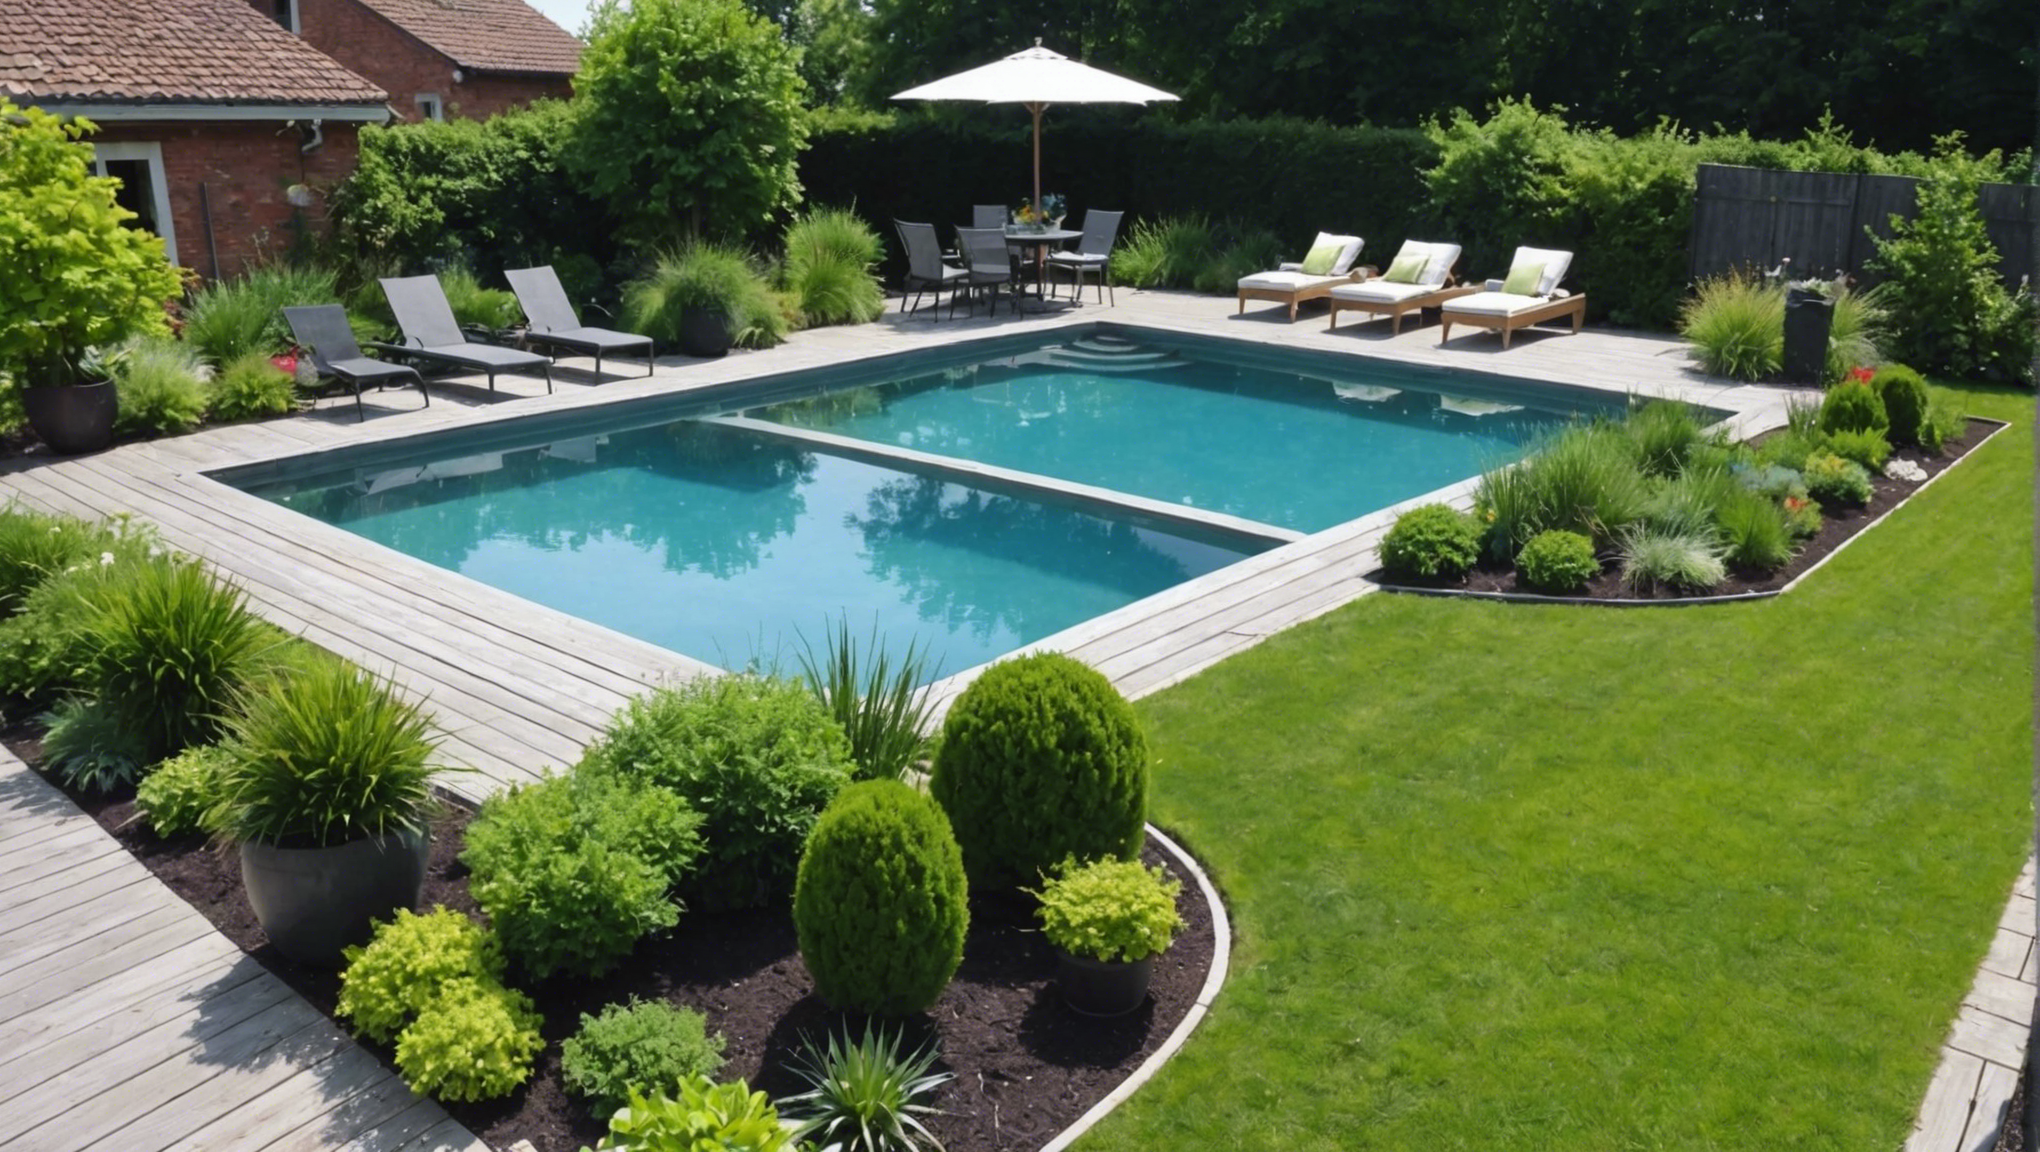 découvrez comment aménager votre jardin autour de votre piscine pour en faire un véritable havre de paix et de détente. conseils et astuces pour créer un espace de relaxation harmonieux et agréable.